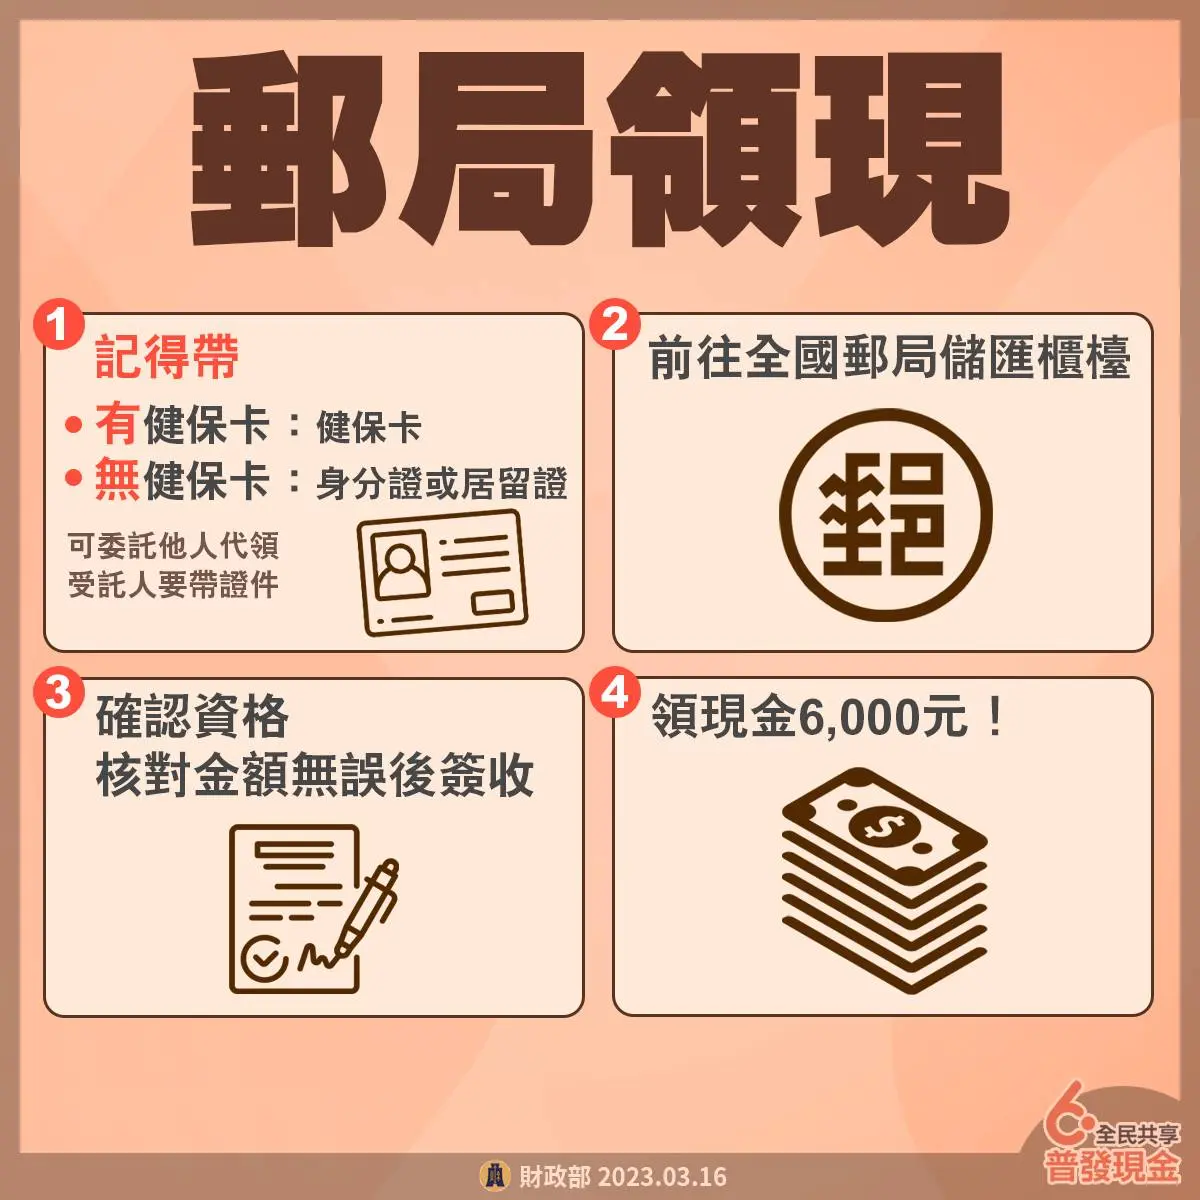 taiwan national cash 6000 yuan 2023 a5